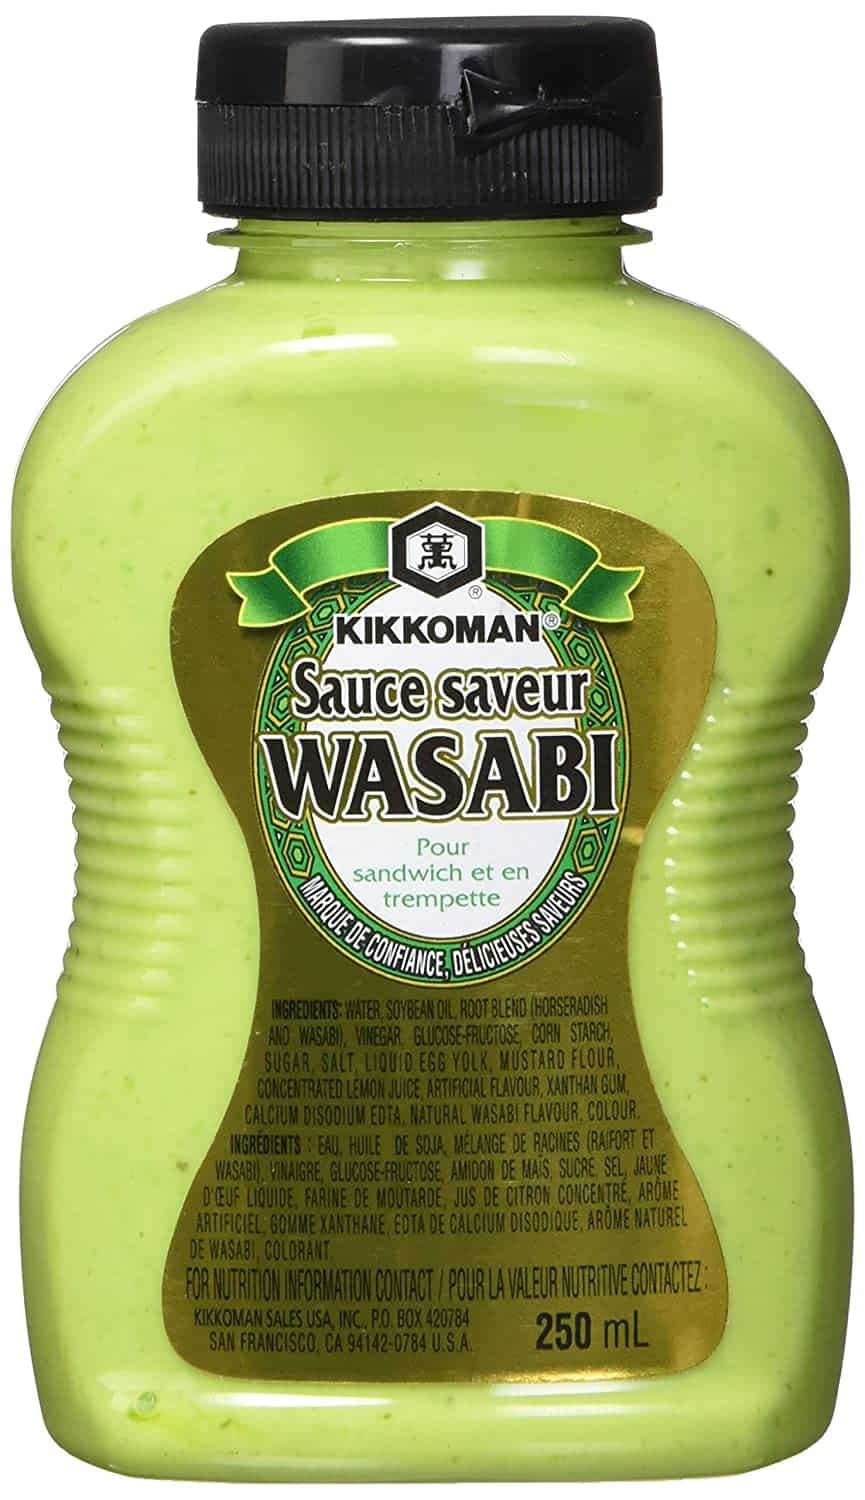 molho de wasabi kikkoman